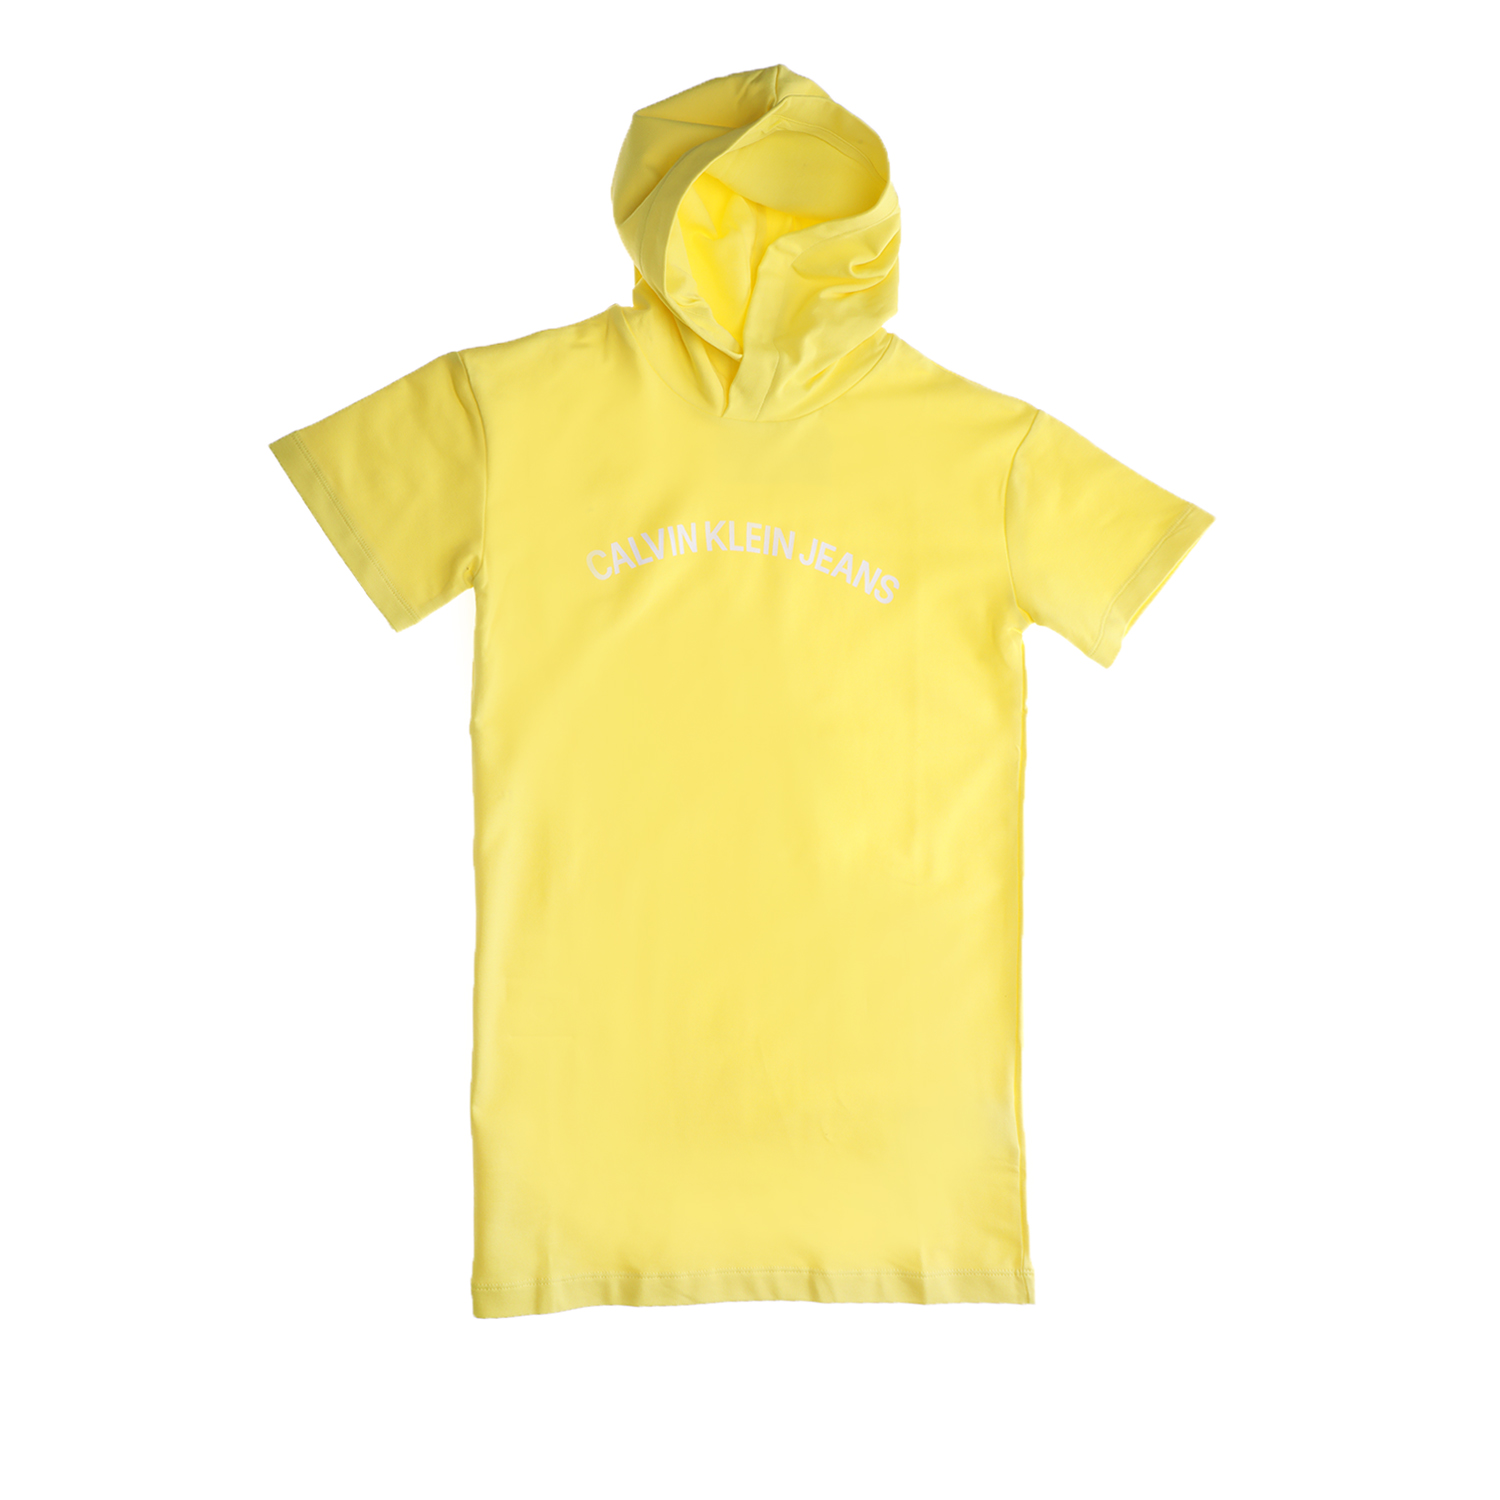 Παιδικά/Girls/Ρούχα/Φορέματα Κοντομάνικα-Αμάνικα CALVIN KLEIN JEANS KIDS - Παιδικό φούτερ mini φόρεμα CALVIN KLEIN JEANS KIDS κίτρινο